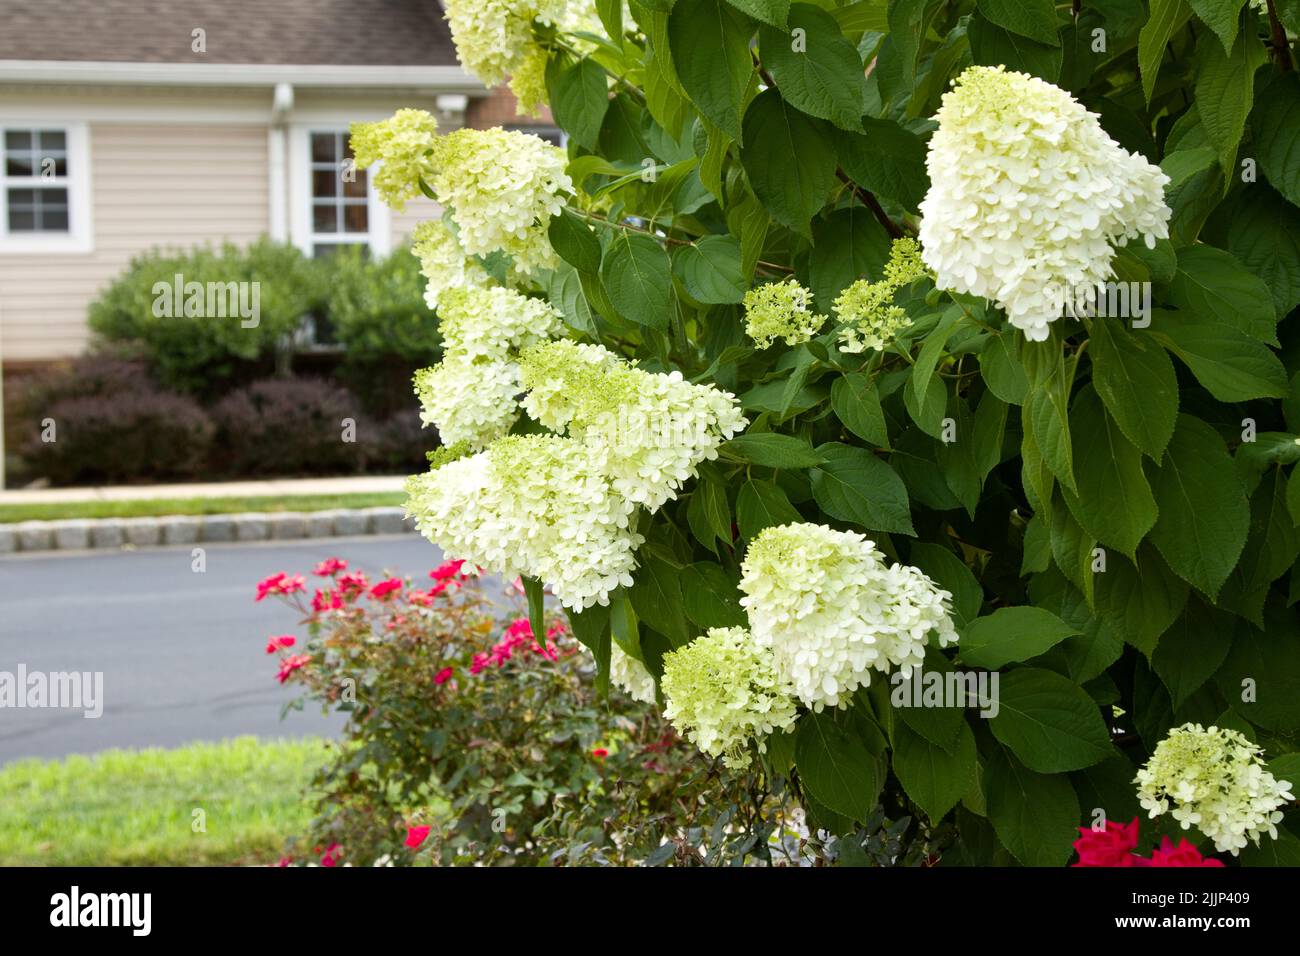 Hydrangea bush, beauty in nature. Stock Photo